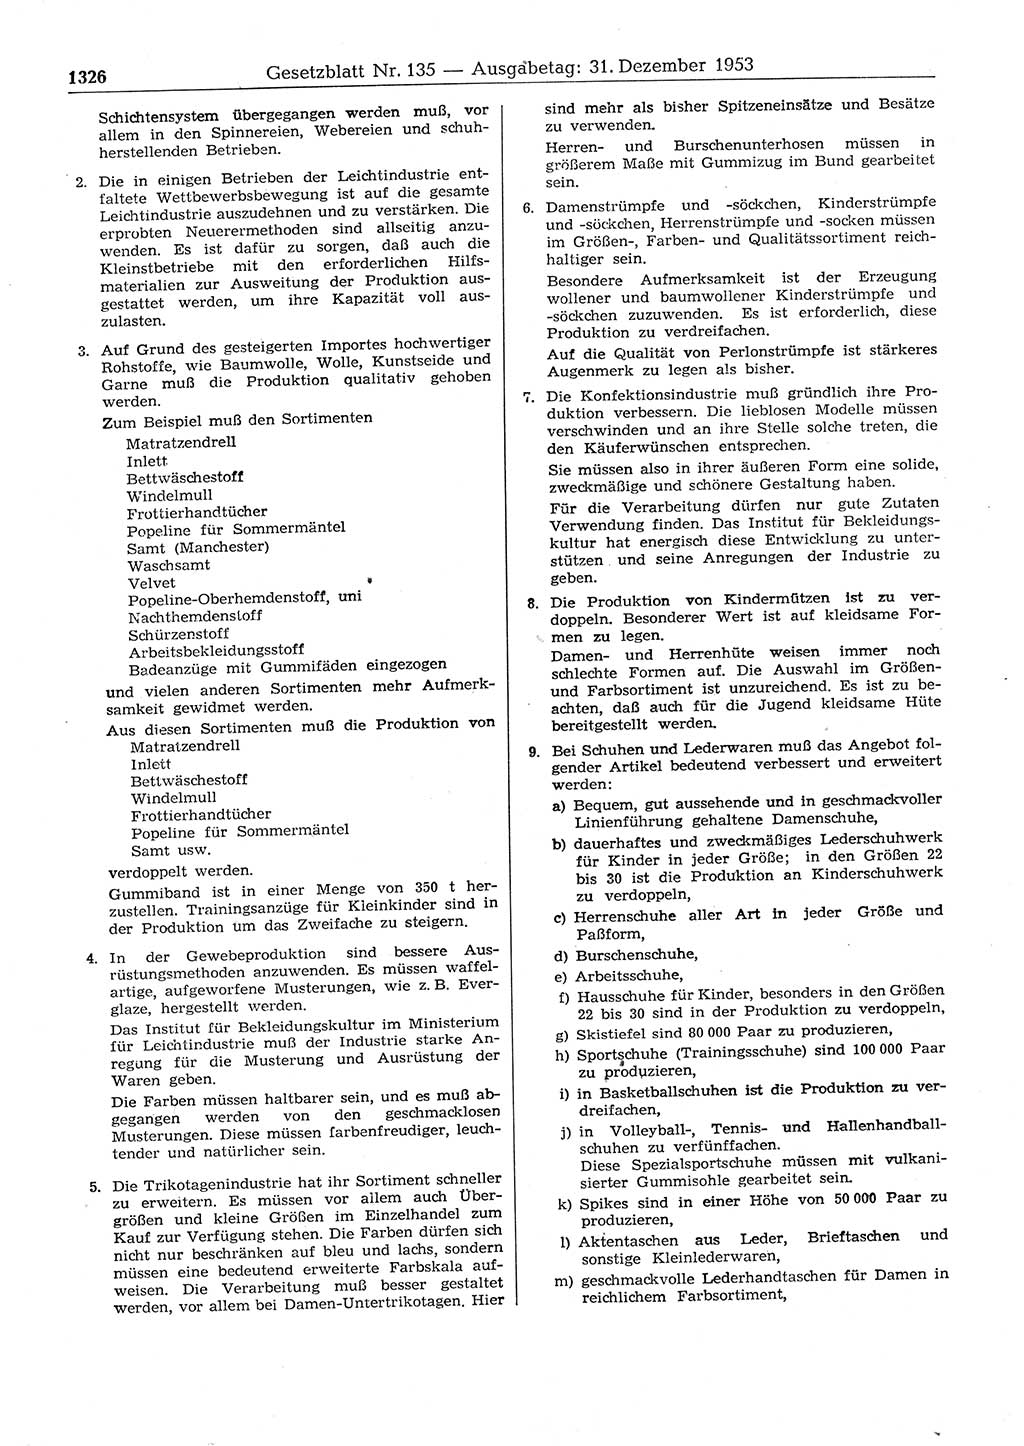 Gesetzblatt (GBl.) der Deutschen Demokratischen Republik (DDR) 1953, Seite 1326 (GBl. DDR 1953, S. 1326)